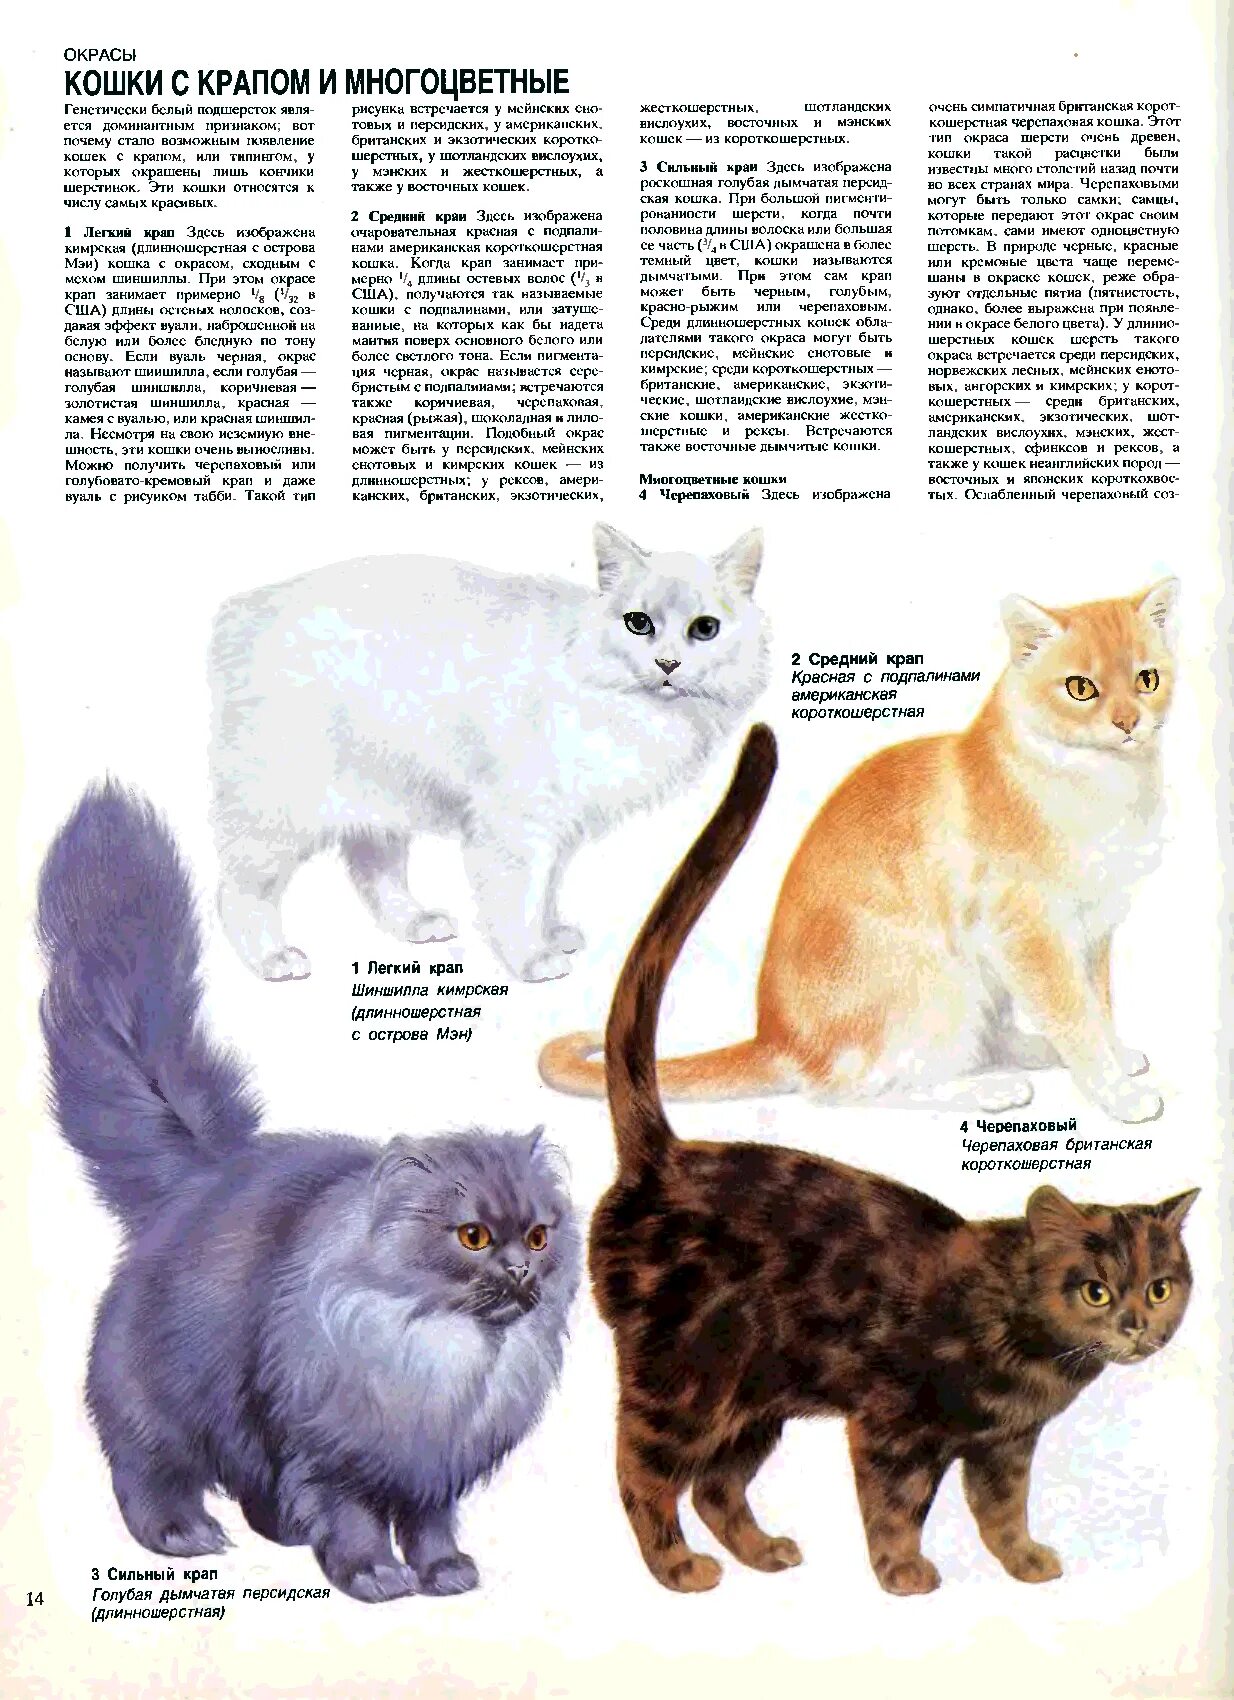 Расцветки кошек. Типы окраски кошек. Порода и окрас кошек. Расцветки шерсти кошек. Типы окрасов кошек